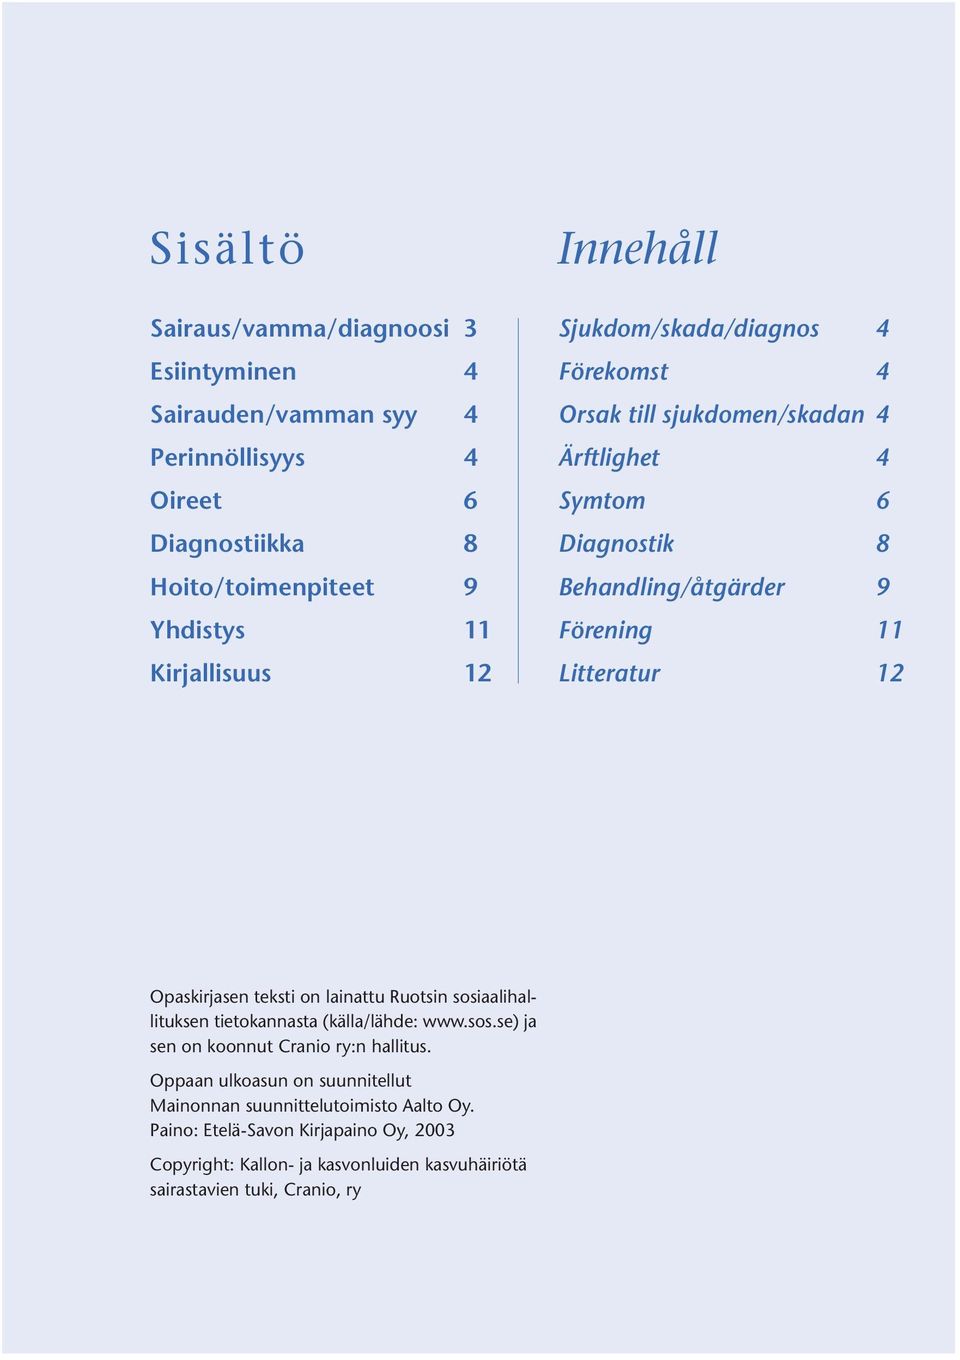 Opaskirjasen teksti on lainattu Ruotsin sosiaalihallituksen tietokannasta (källa/lähde: www.sos.se) ja sen on koonnut Cranio ry:n hallitus.